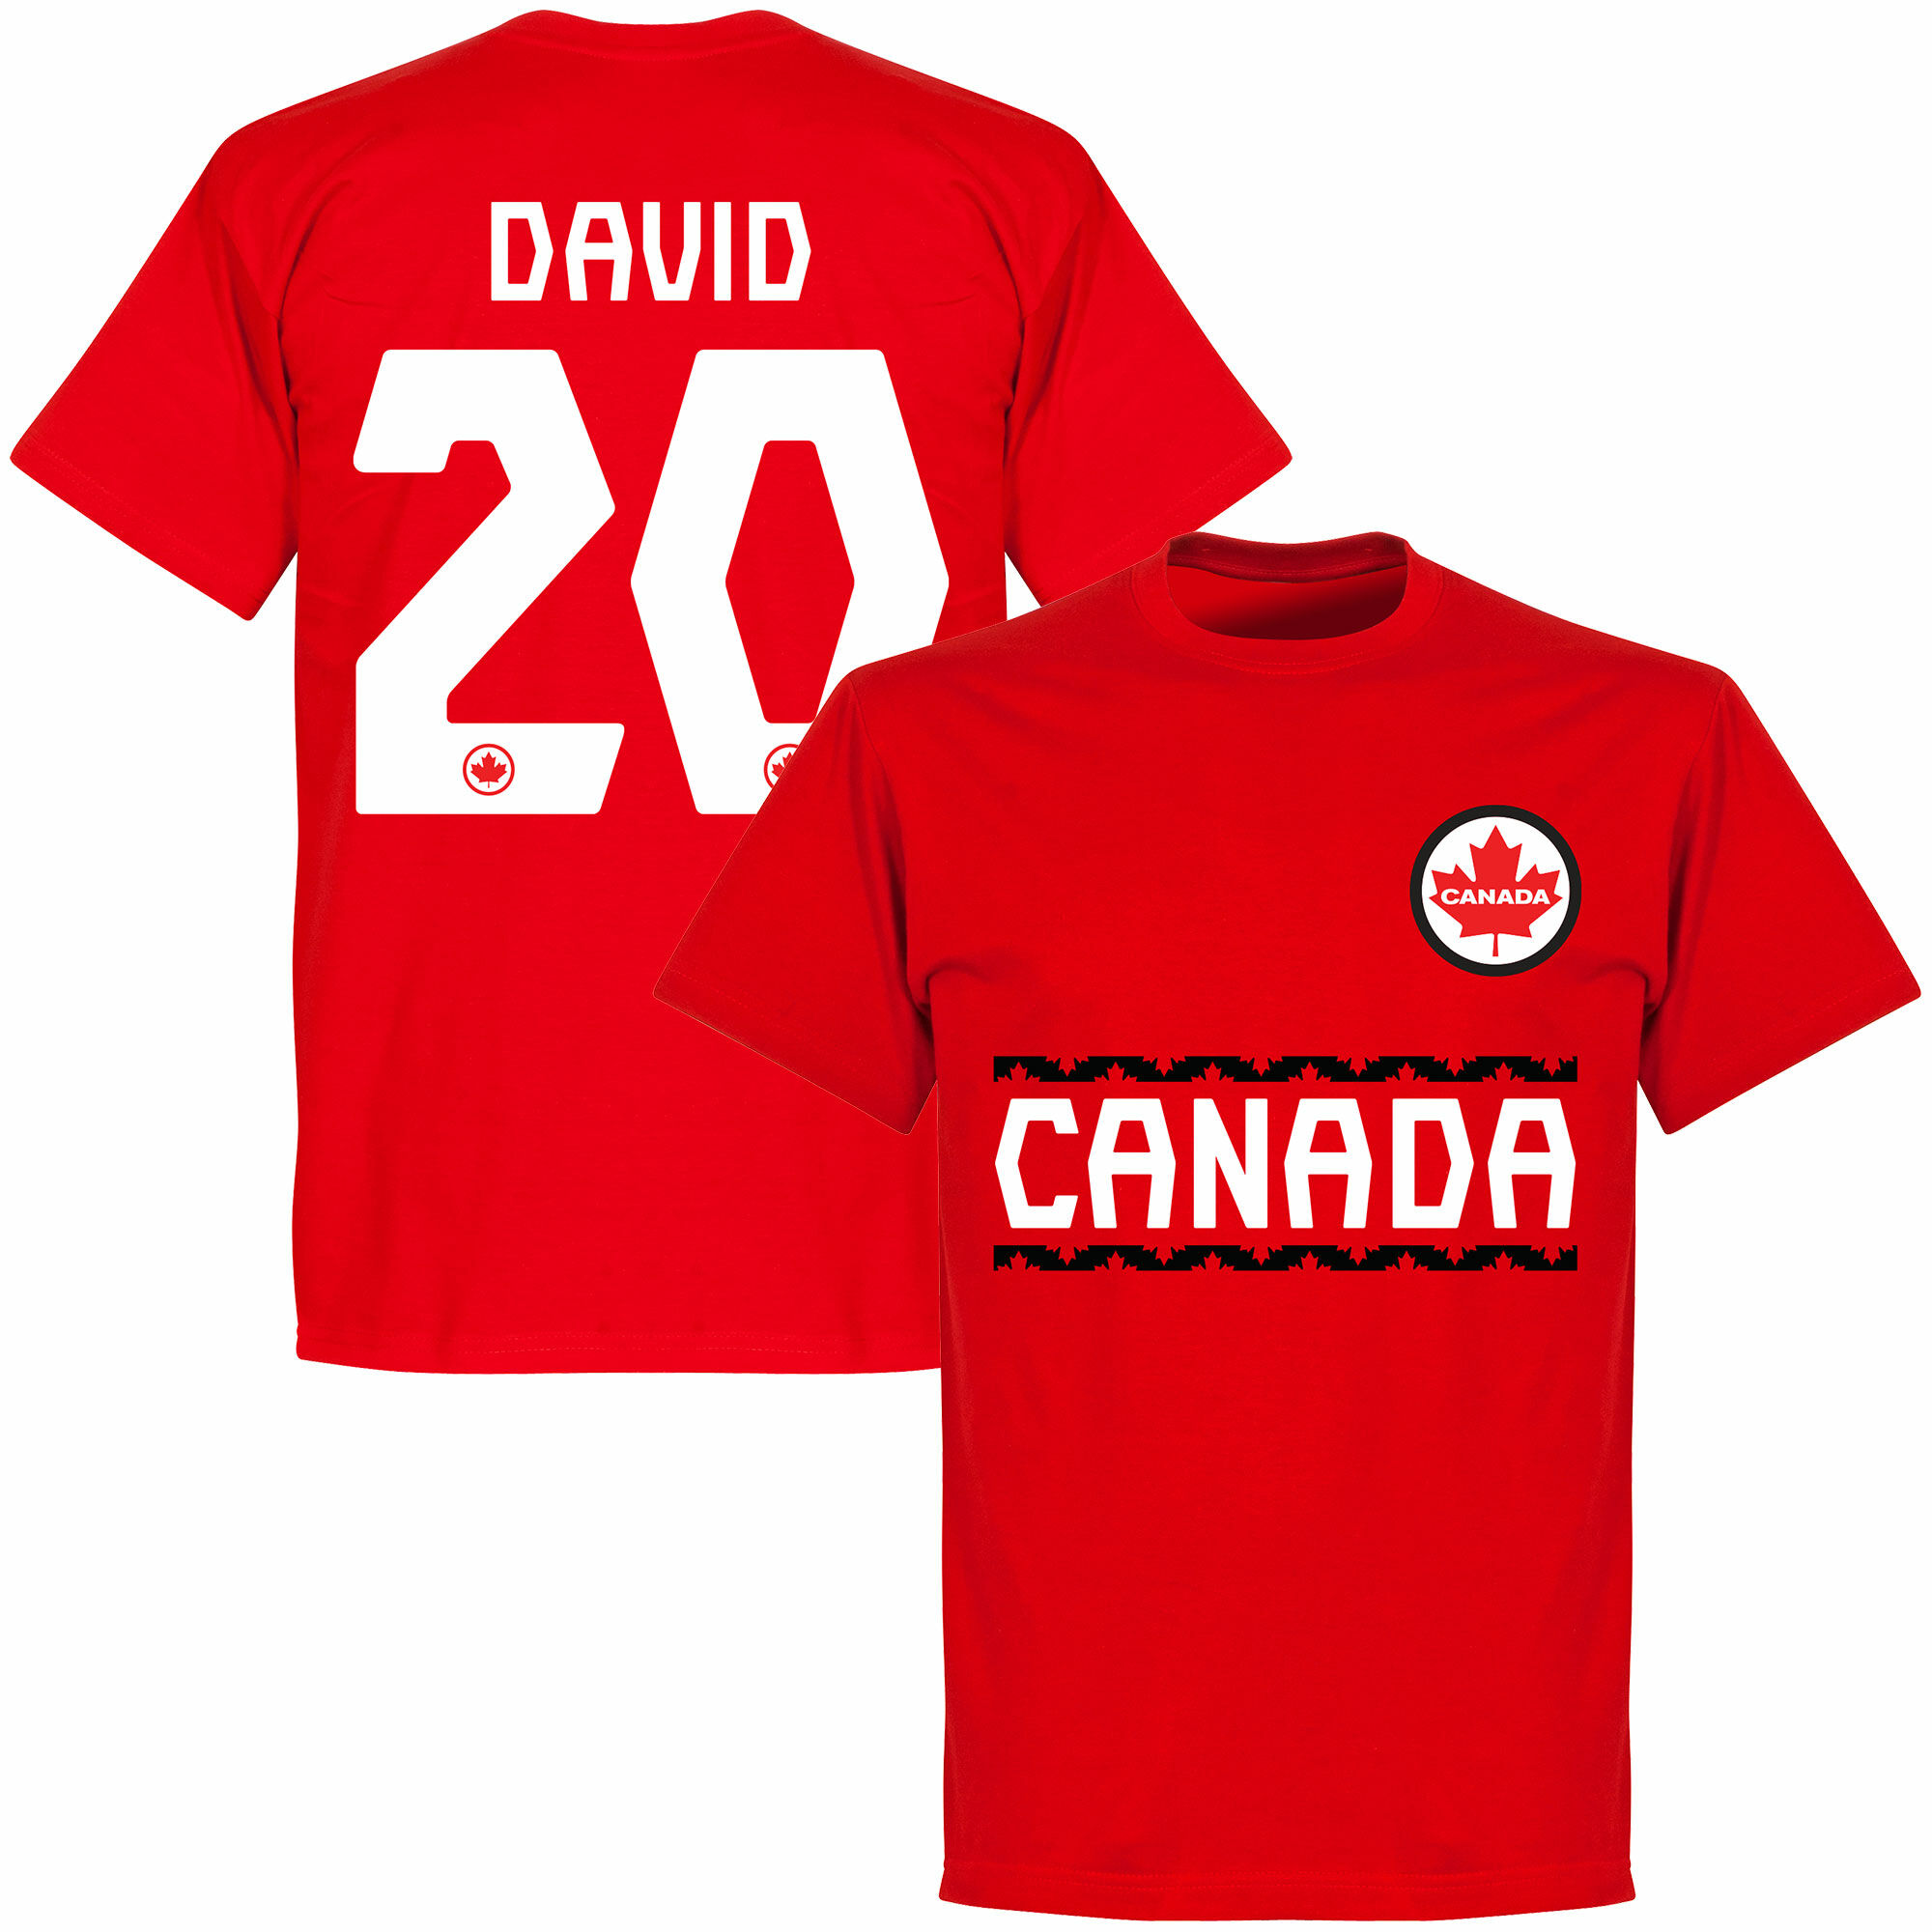 Kanada - Tričko - červené, číslo 20, Jonathan David